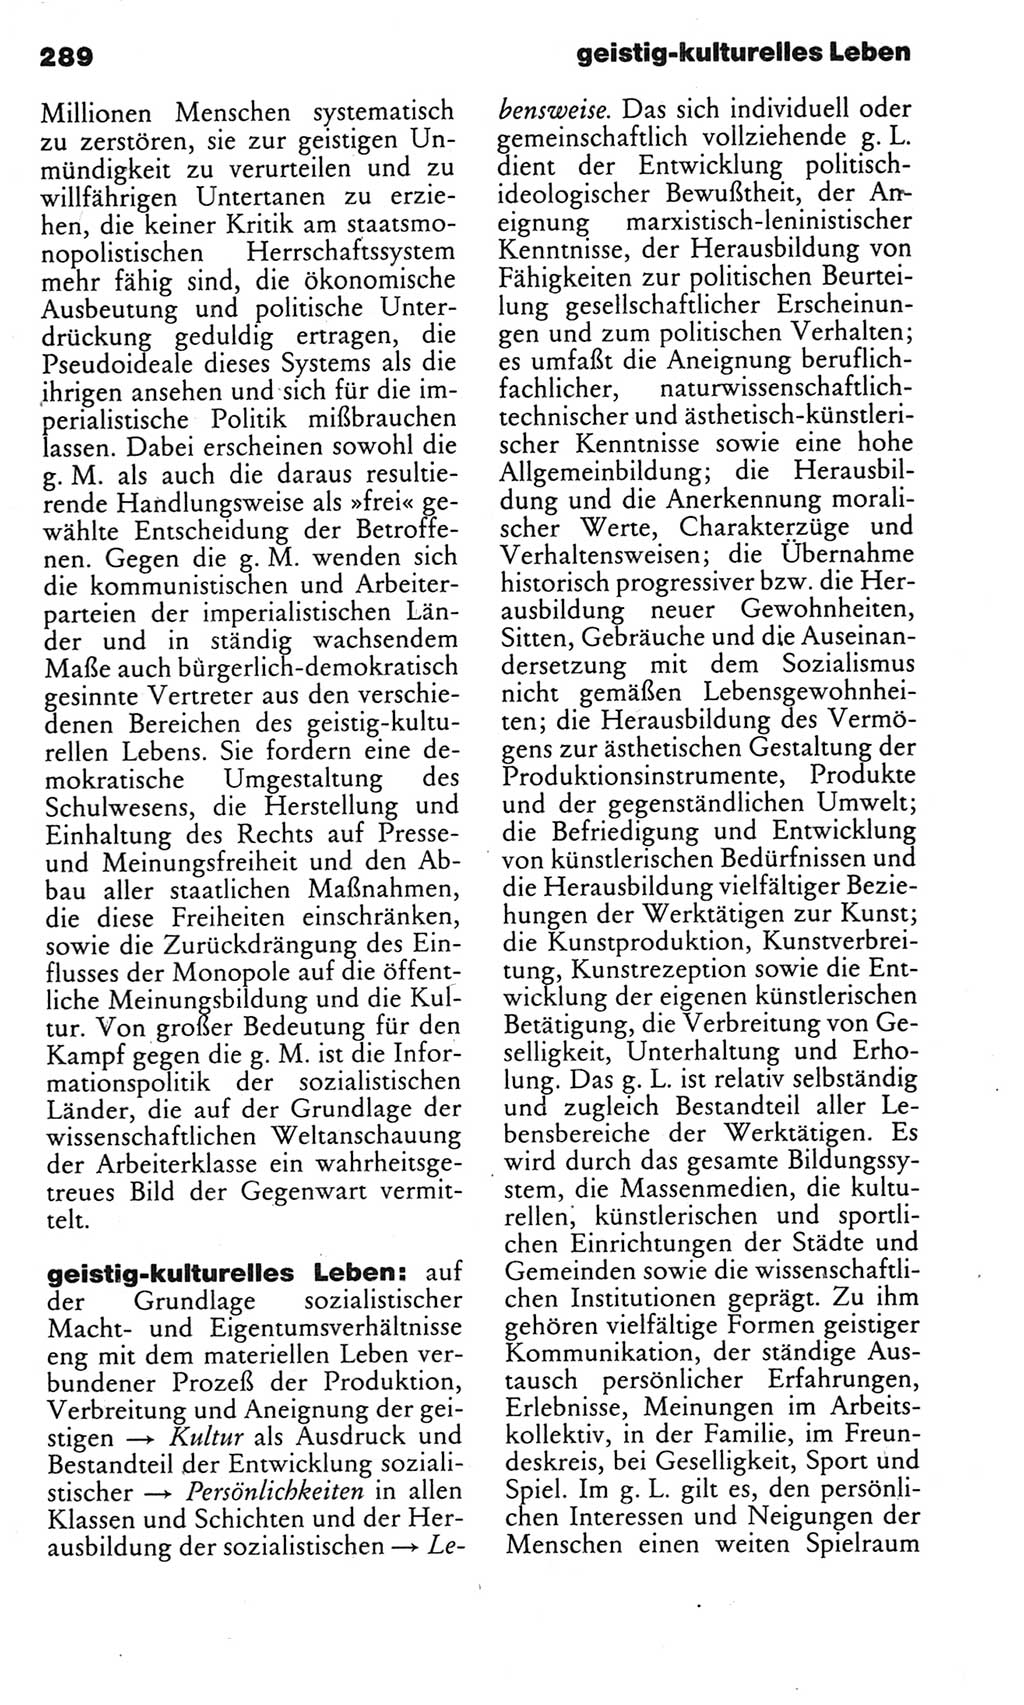 Kleines politisches Wörterbuch [Deutsche Demokratische Republik (DDR)] 1985, Seite 289 (Kl. pol. Wb. DDR 1985, S. 289)